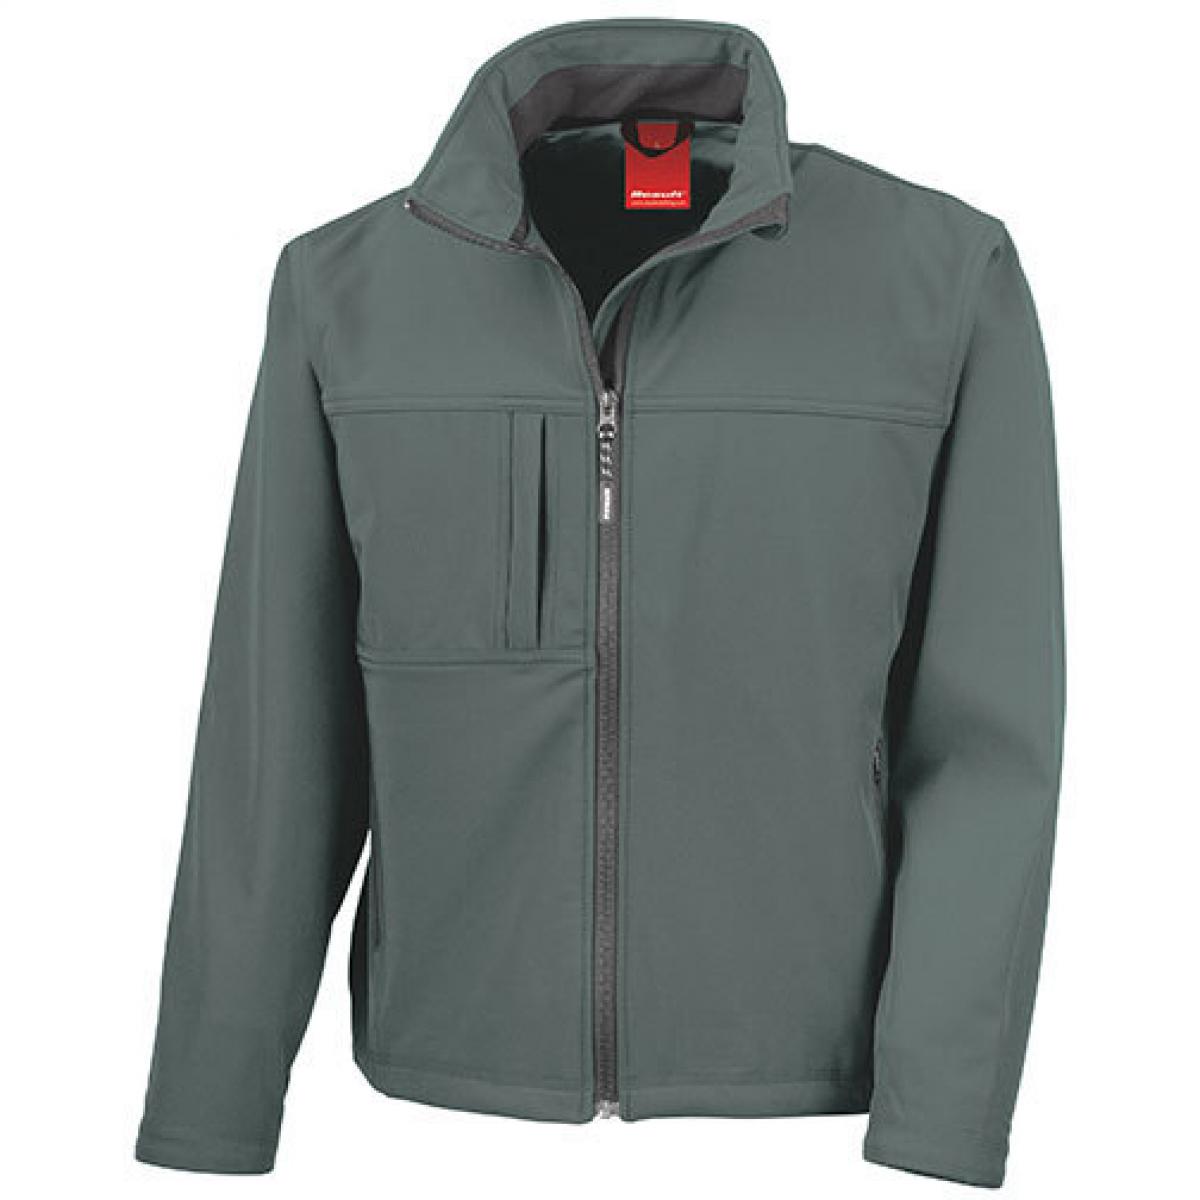 Hersteller: Result Herstellernummer: R121M Artikelbezeichnung: Classic Soft Shell Jacket Farbe: Grey